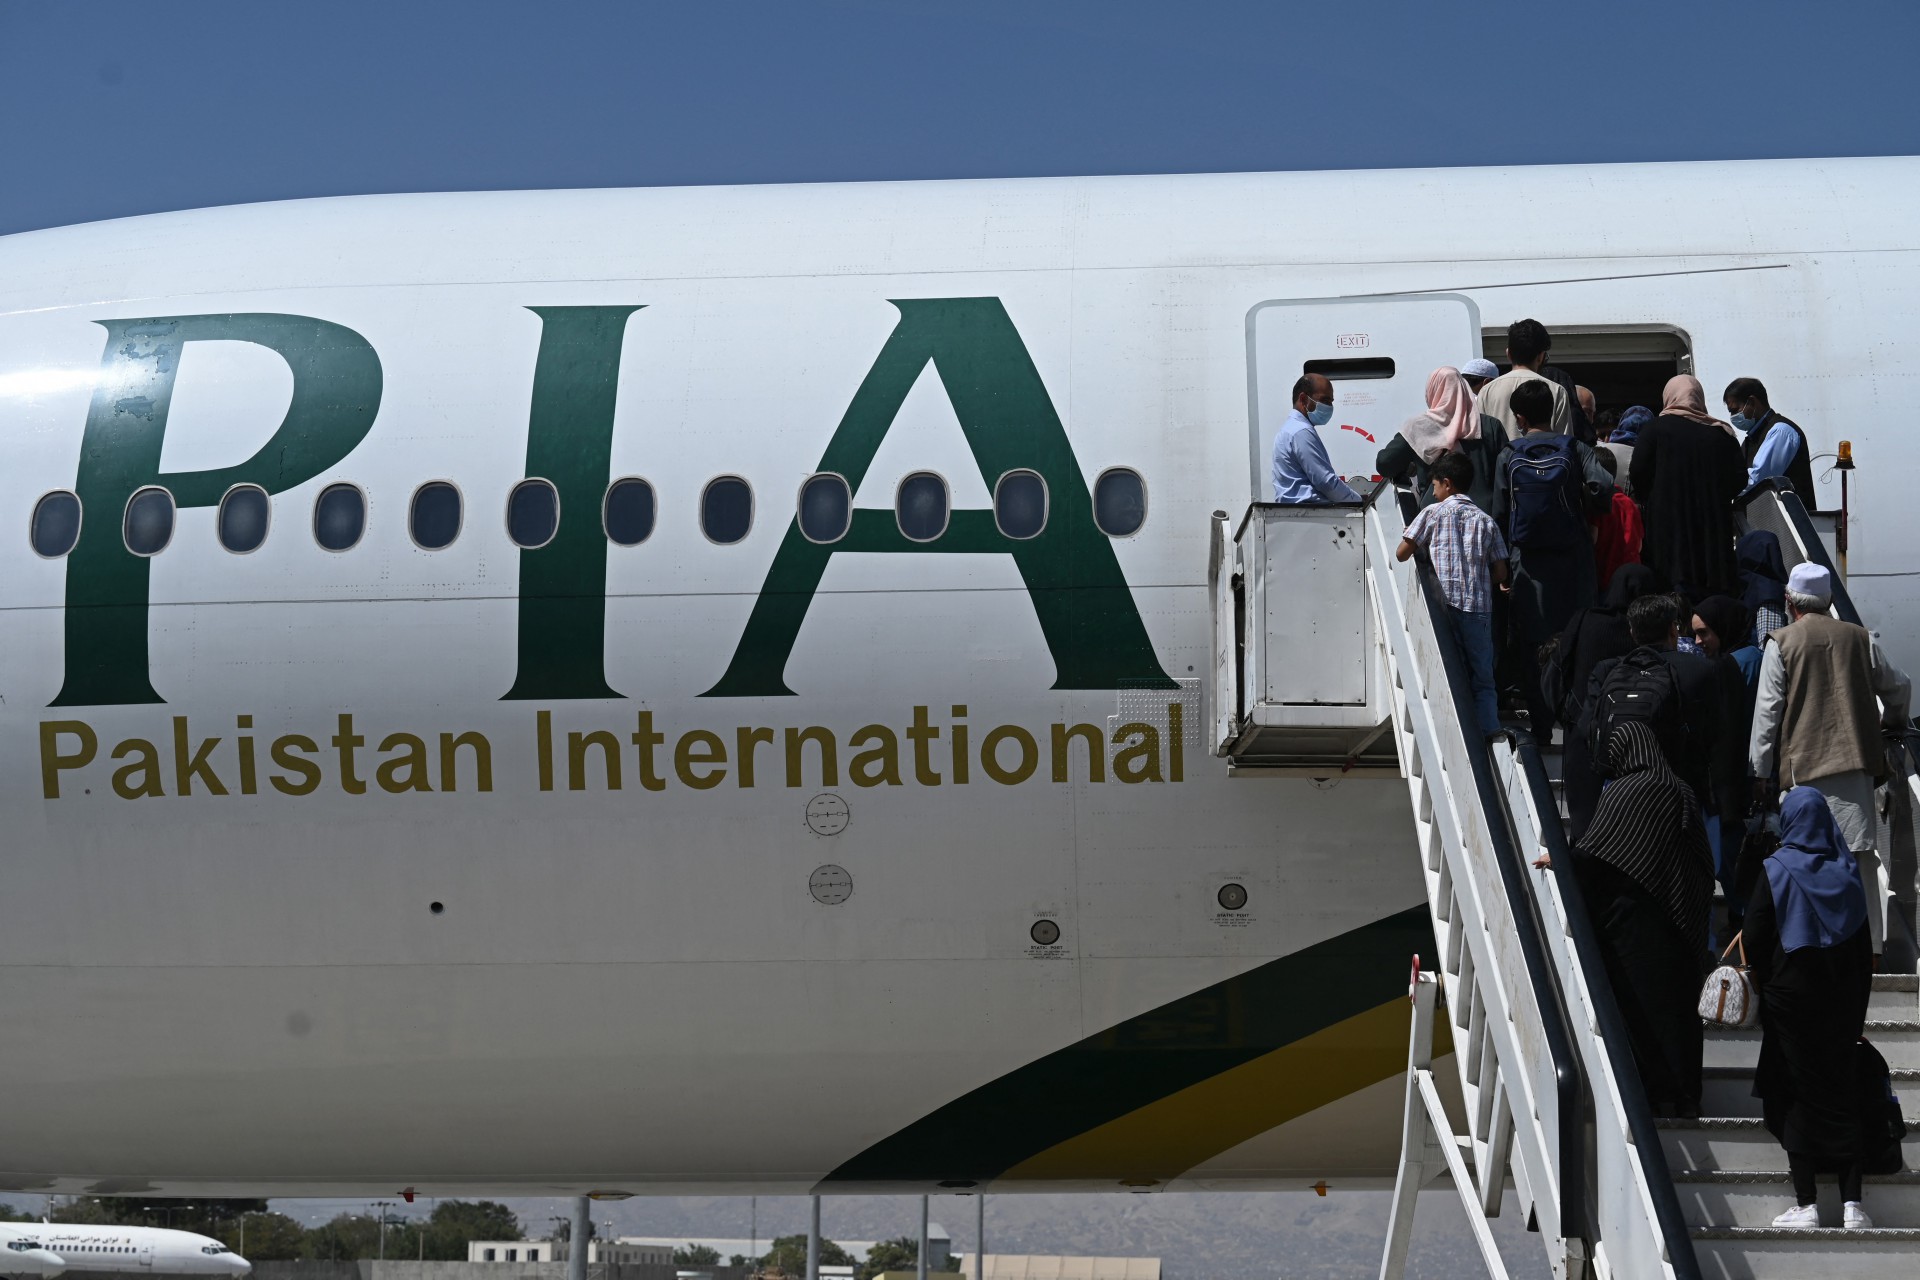 Cabul recebe primeiro voo comercial internacional após volta do Talibã ao poder